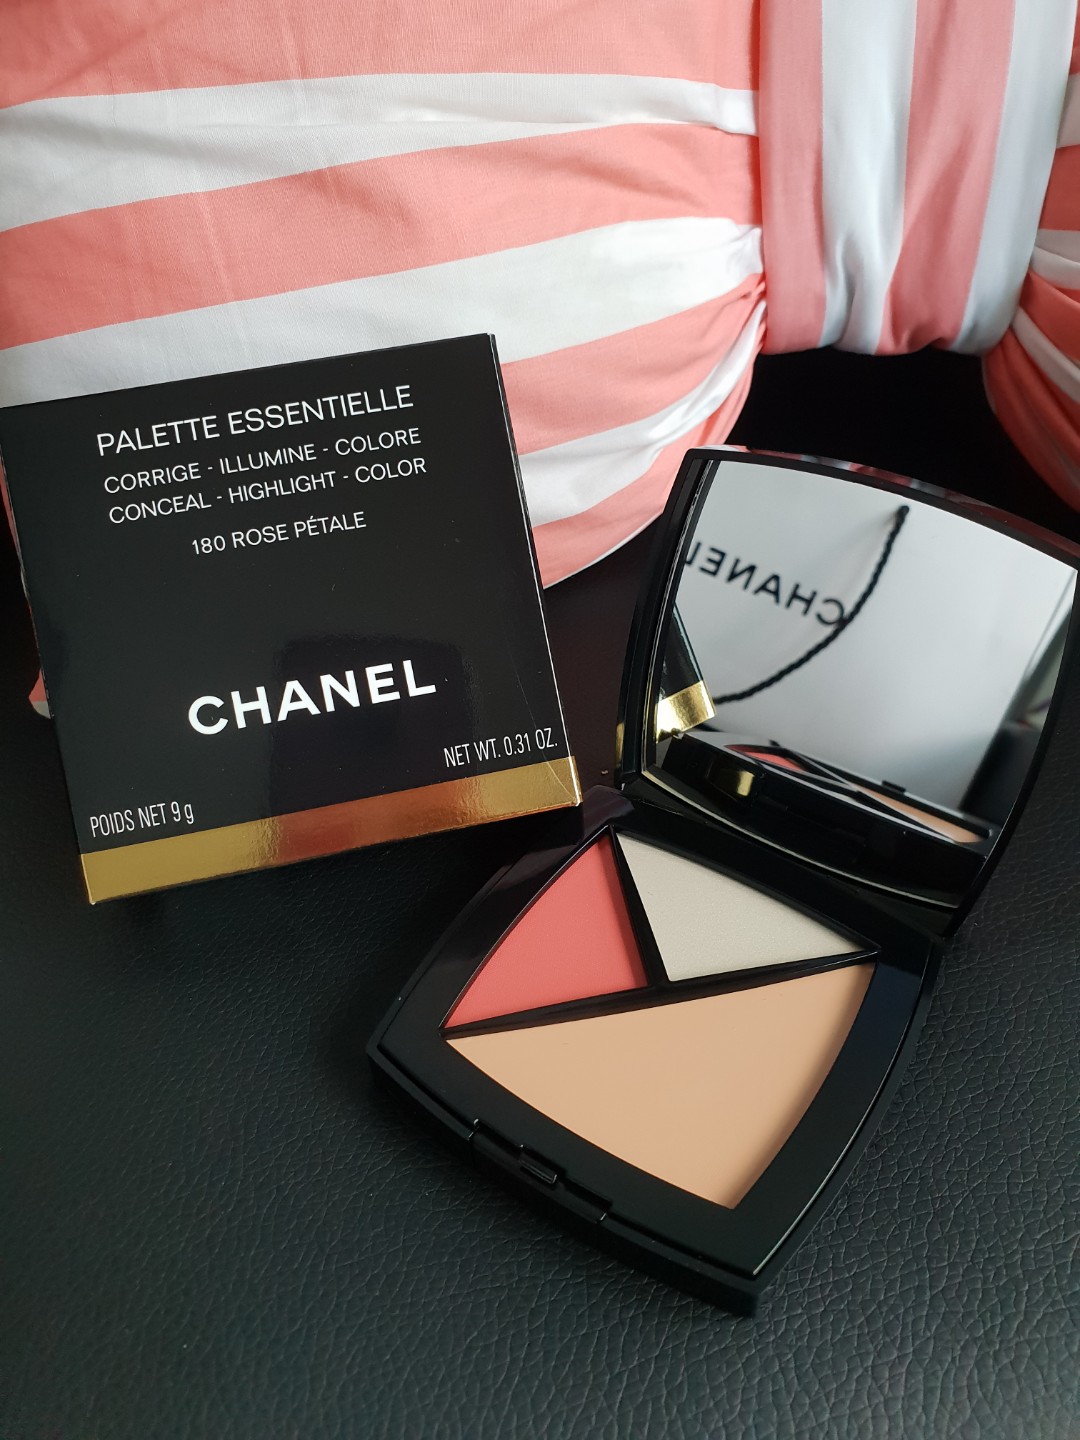 CHANEL Chanel Palette Essentielle - 150 - Beige Clair/Concealer